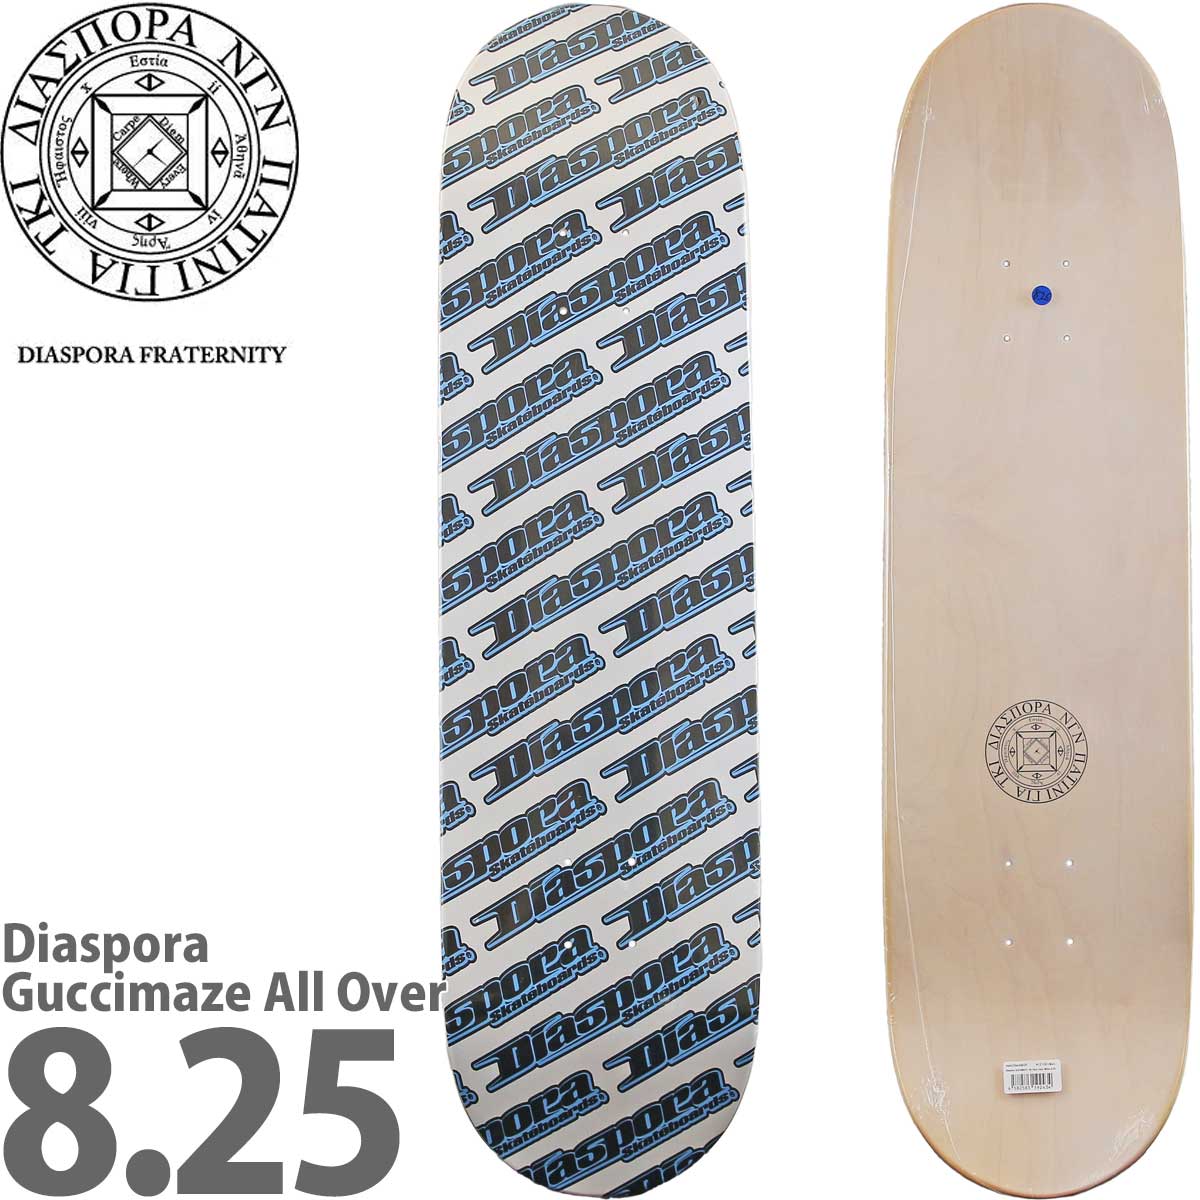 ディアスポラ 8.0 8.25インチ スケボー デッキ Diaspora Skateboards Guccimaze All Over Deck  グッチメイズ スケートボード おしゃれ ブランド スケボーデッキ